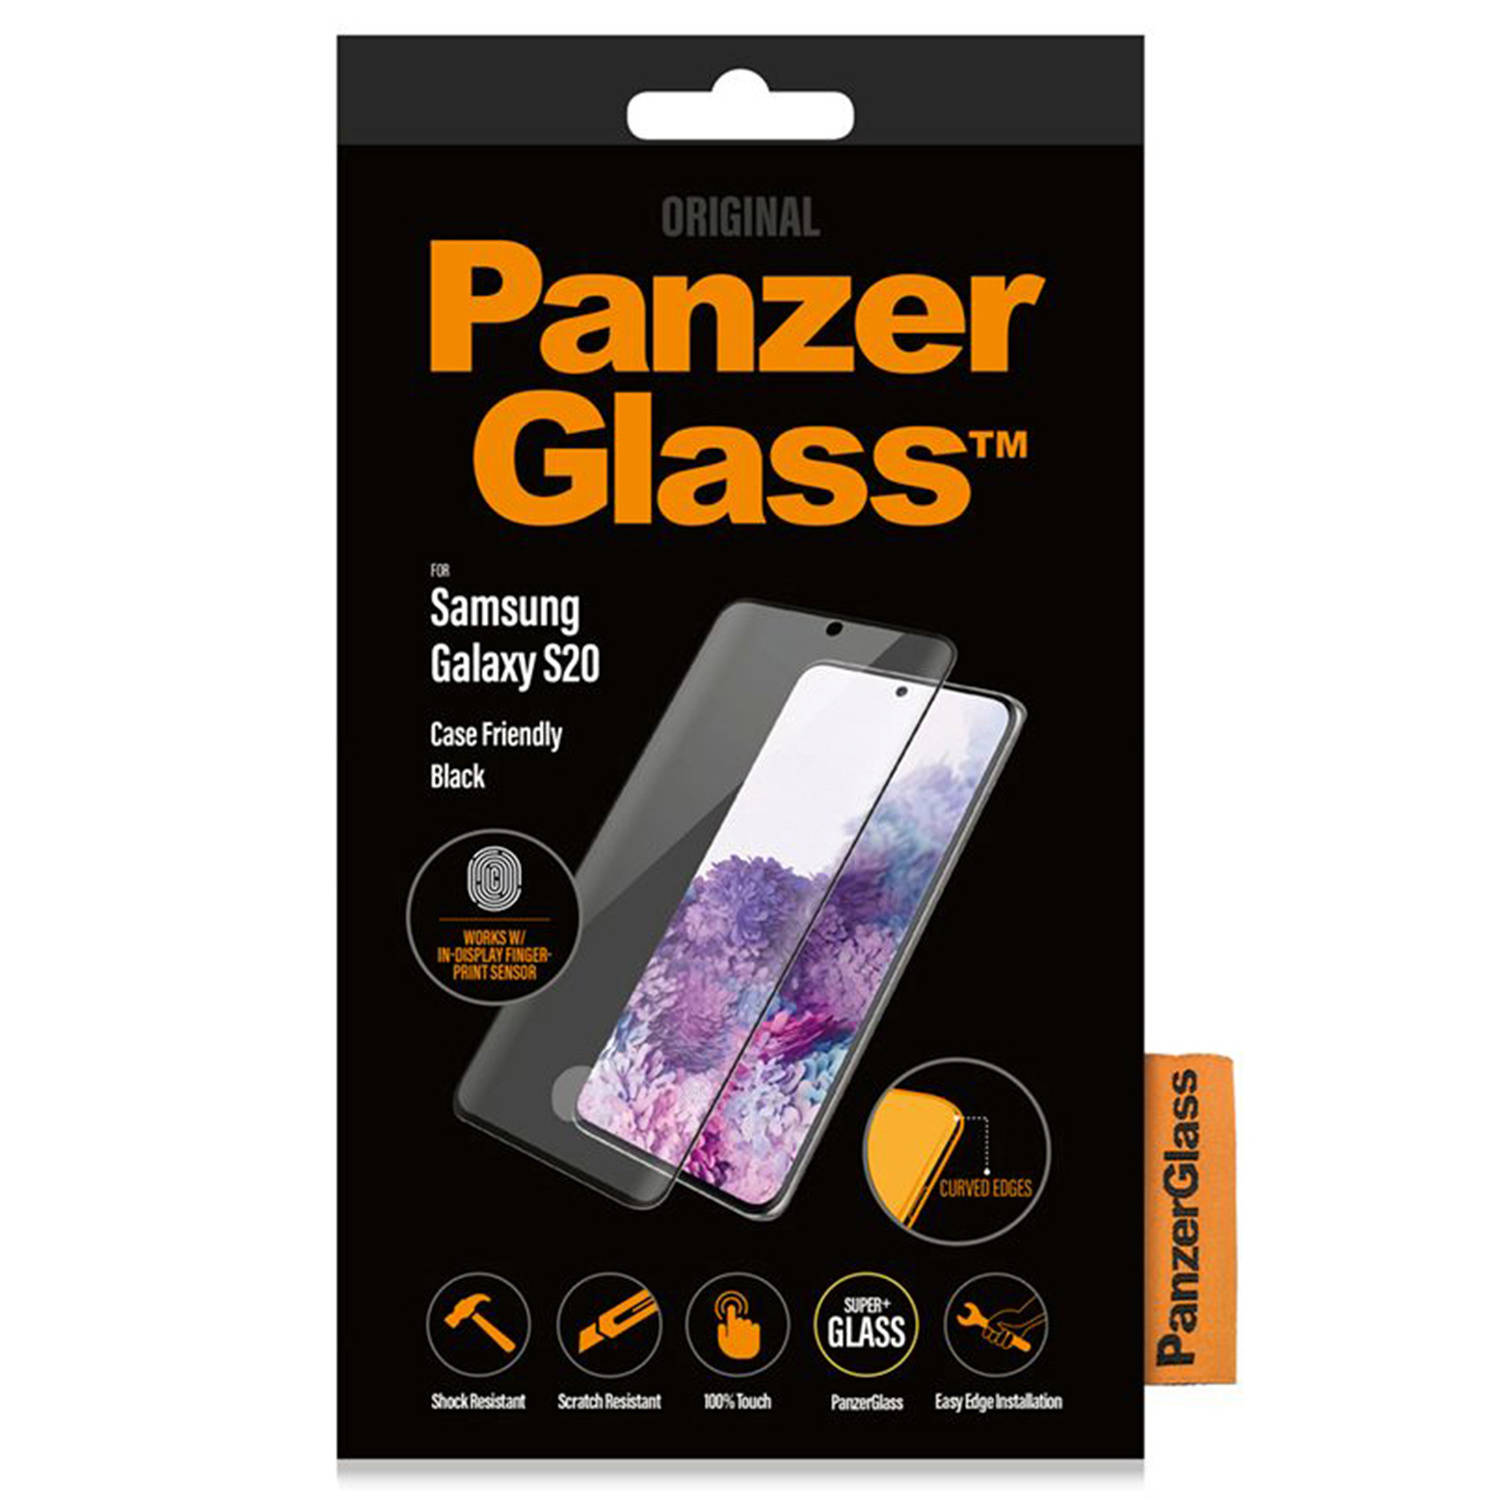 Panzerglass Case Friendly Screenprotector Voor De Samsung Galaxy S20